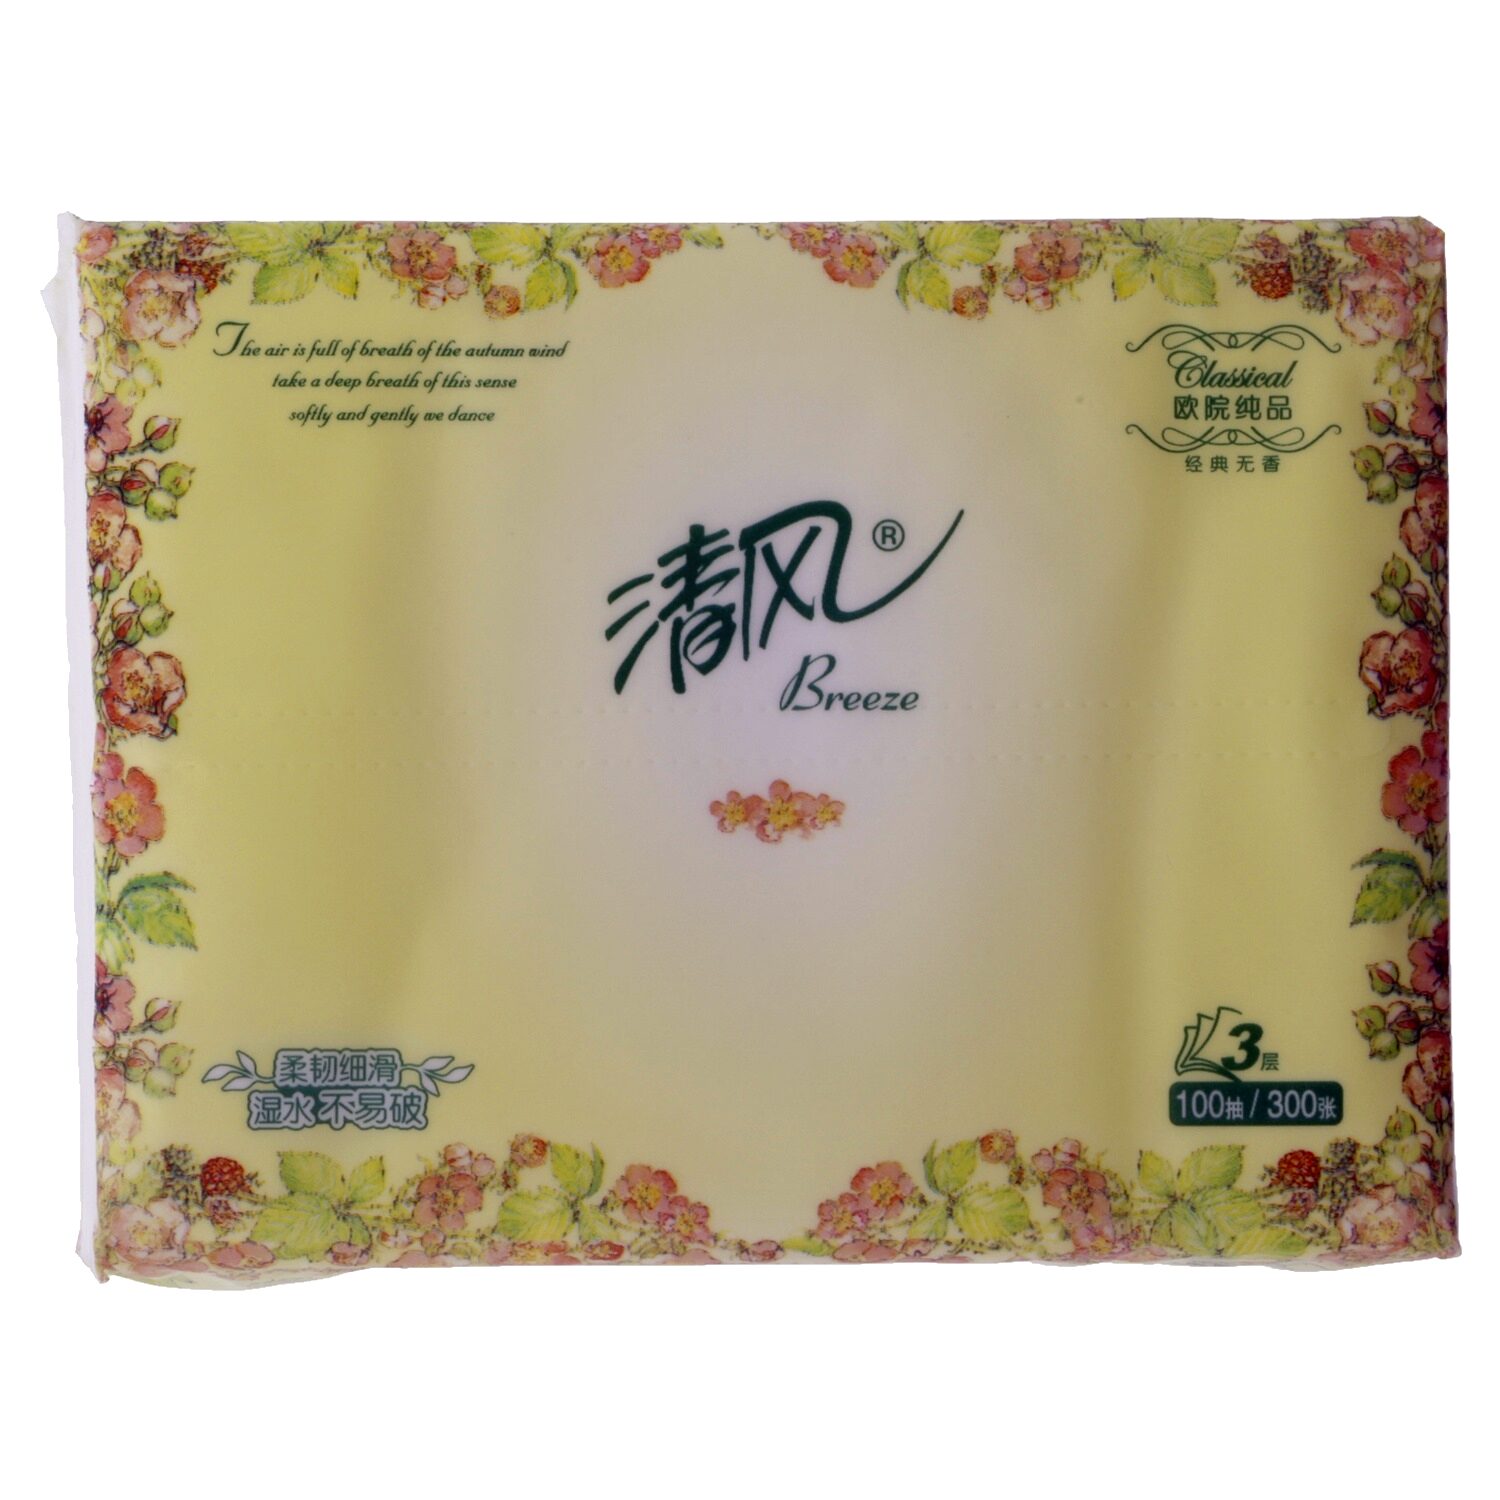 清风牌面巾纸 - Produkt - zh